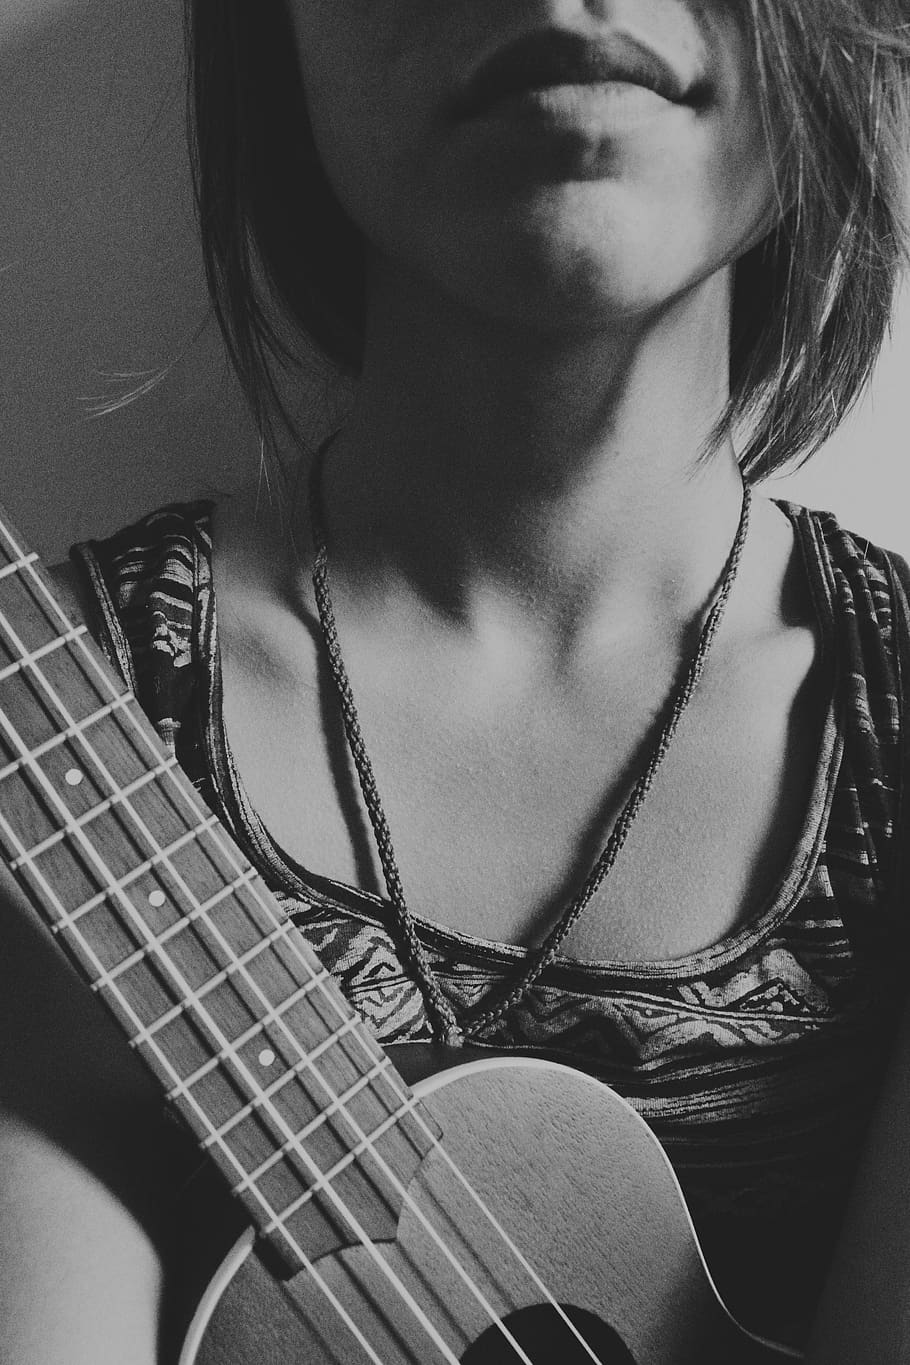 HD wallpaper: girl, ukulele, uke, song, music, hair, one person, musical instrument Wallpaper Flare